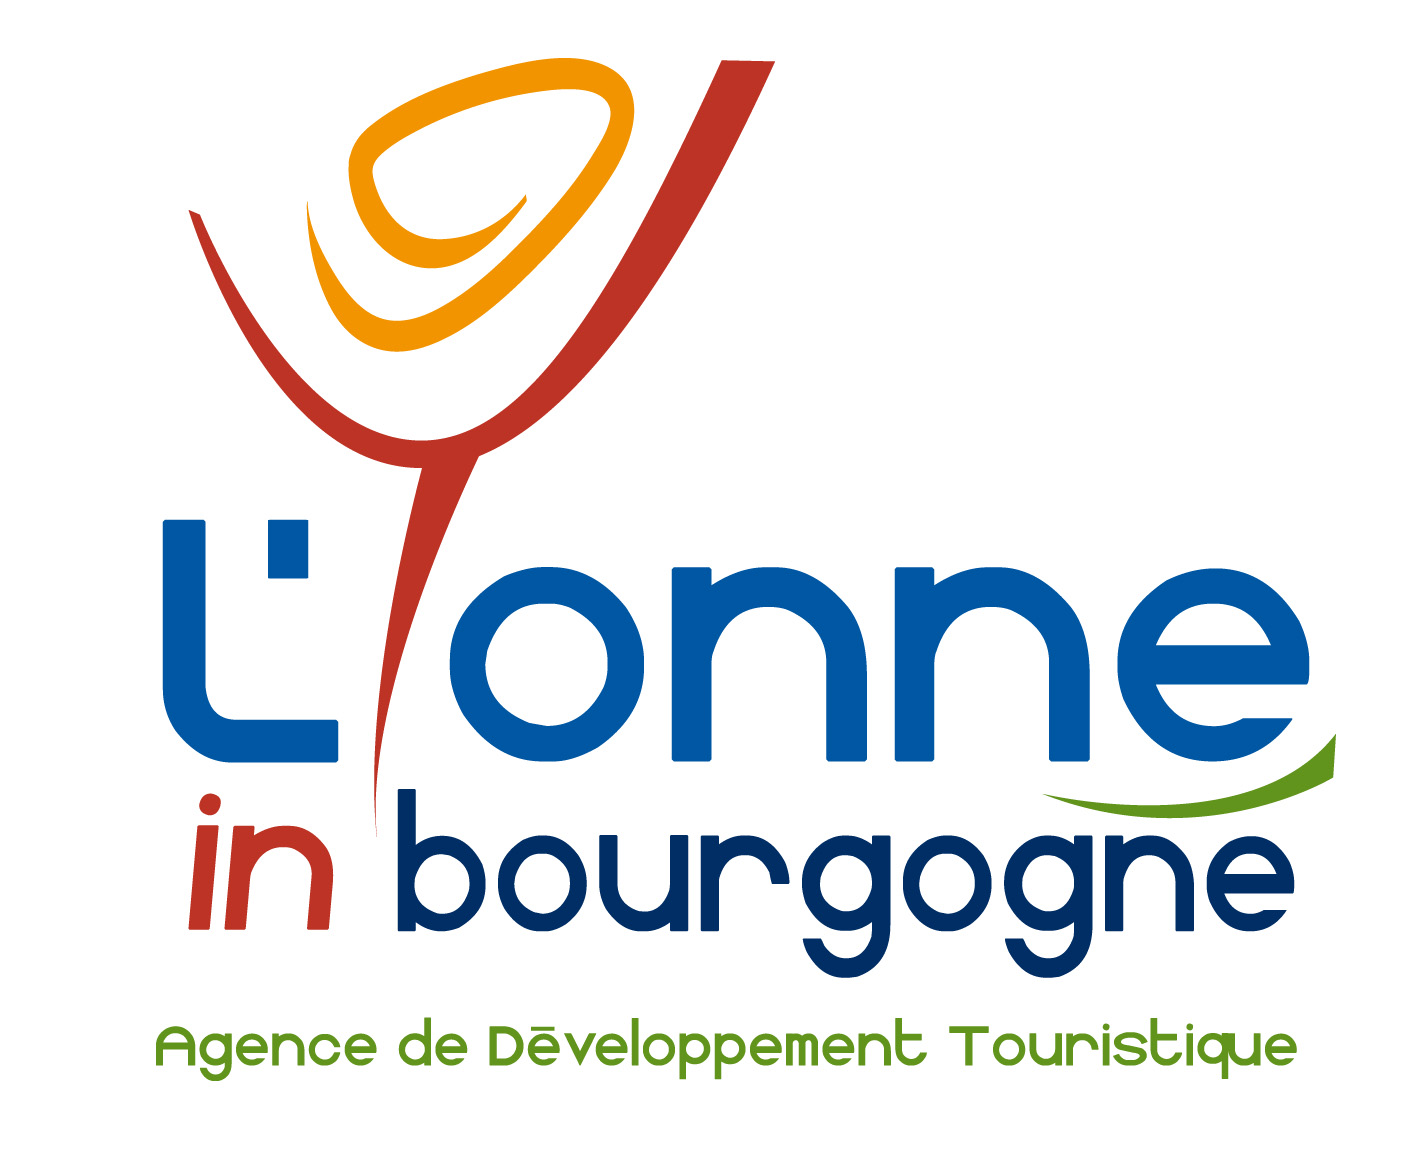 RDV le 15/11 : réunion producteurs • Yonne > DATAtourisme